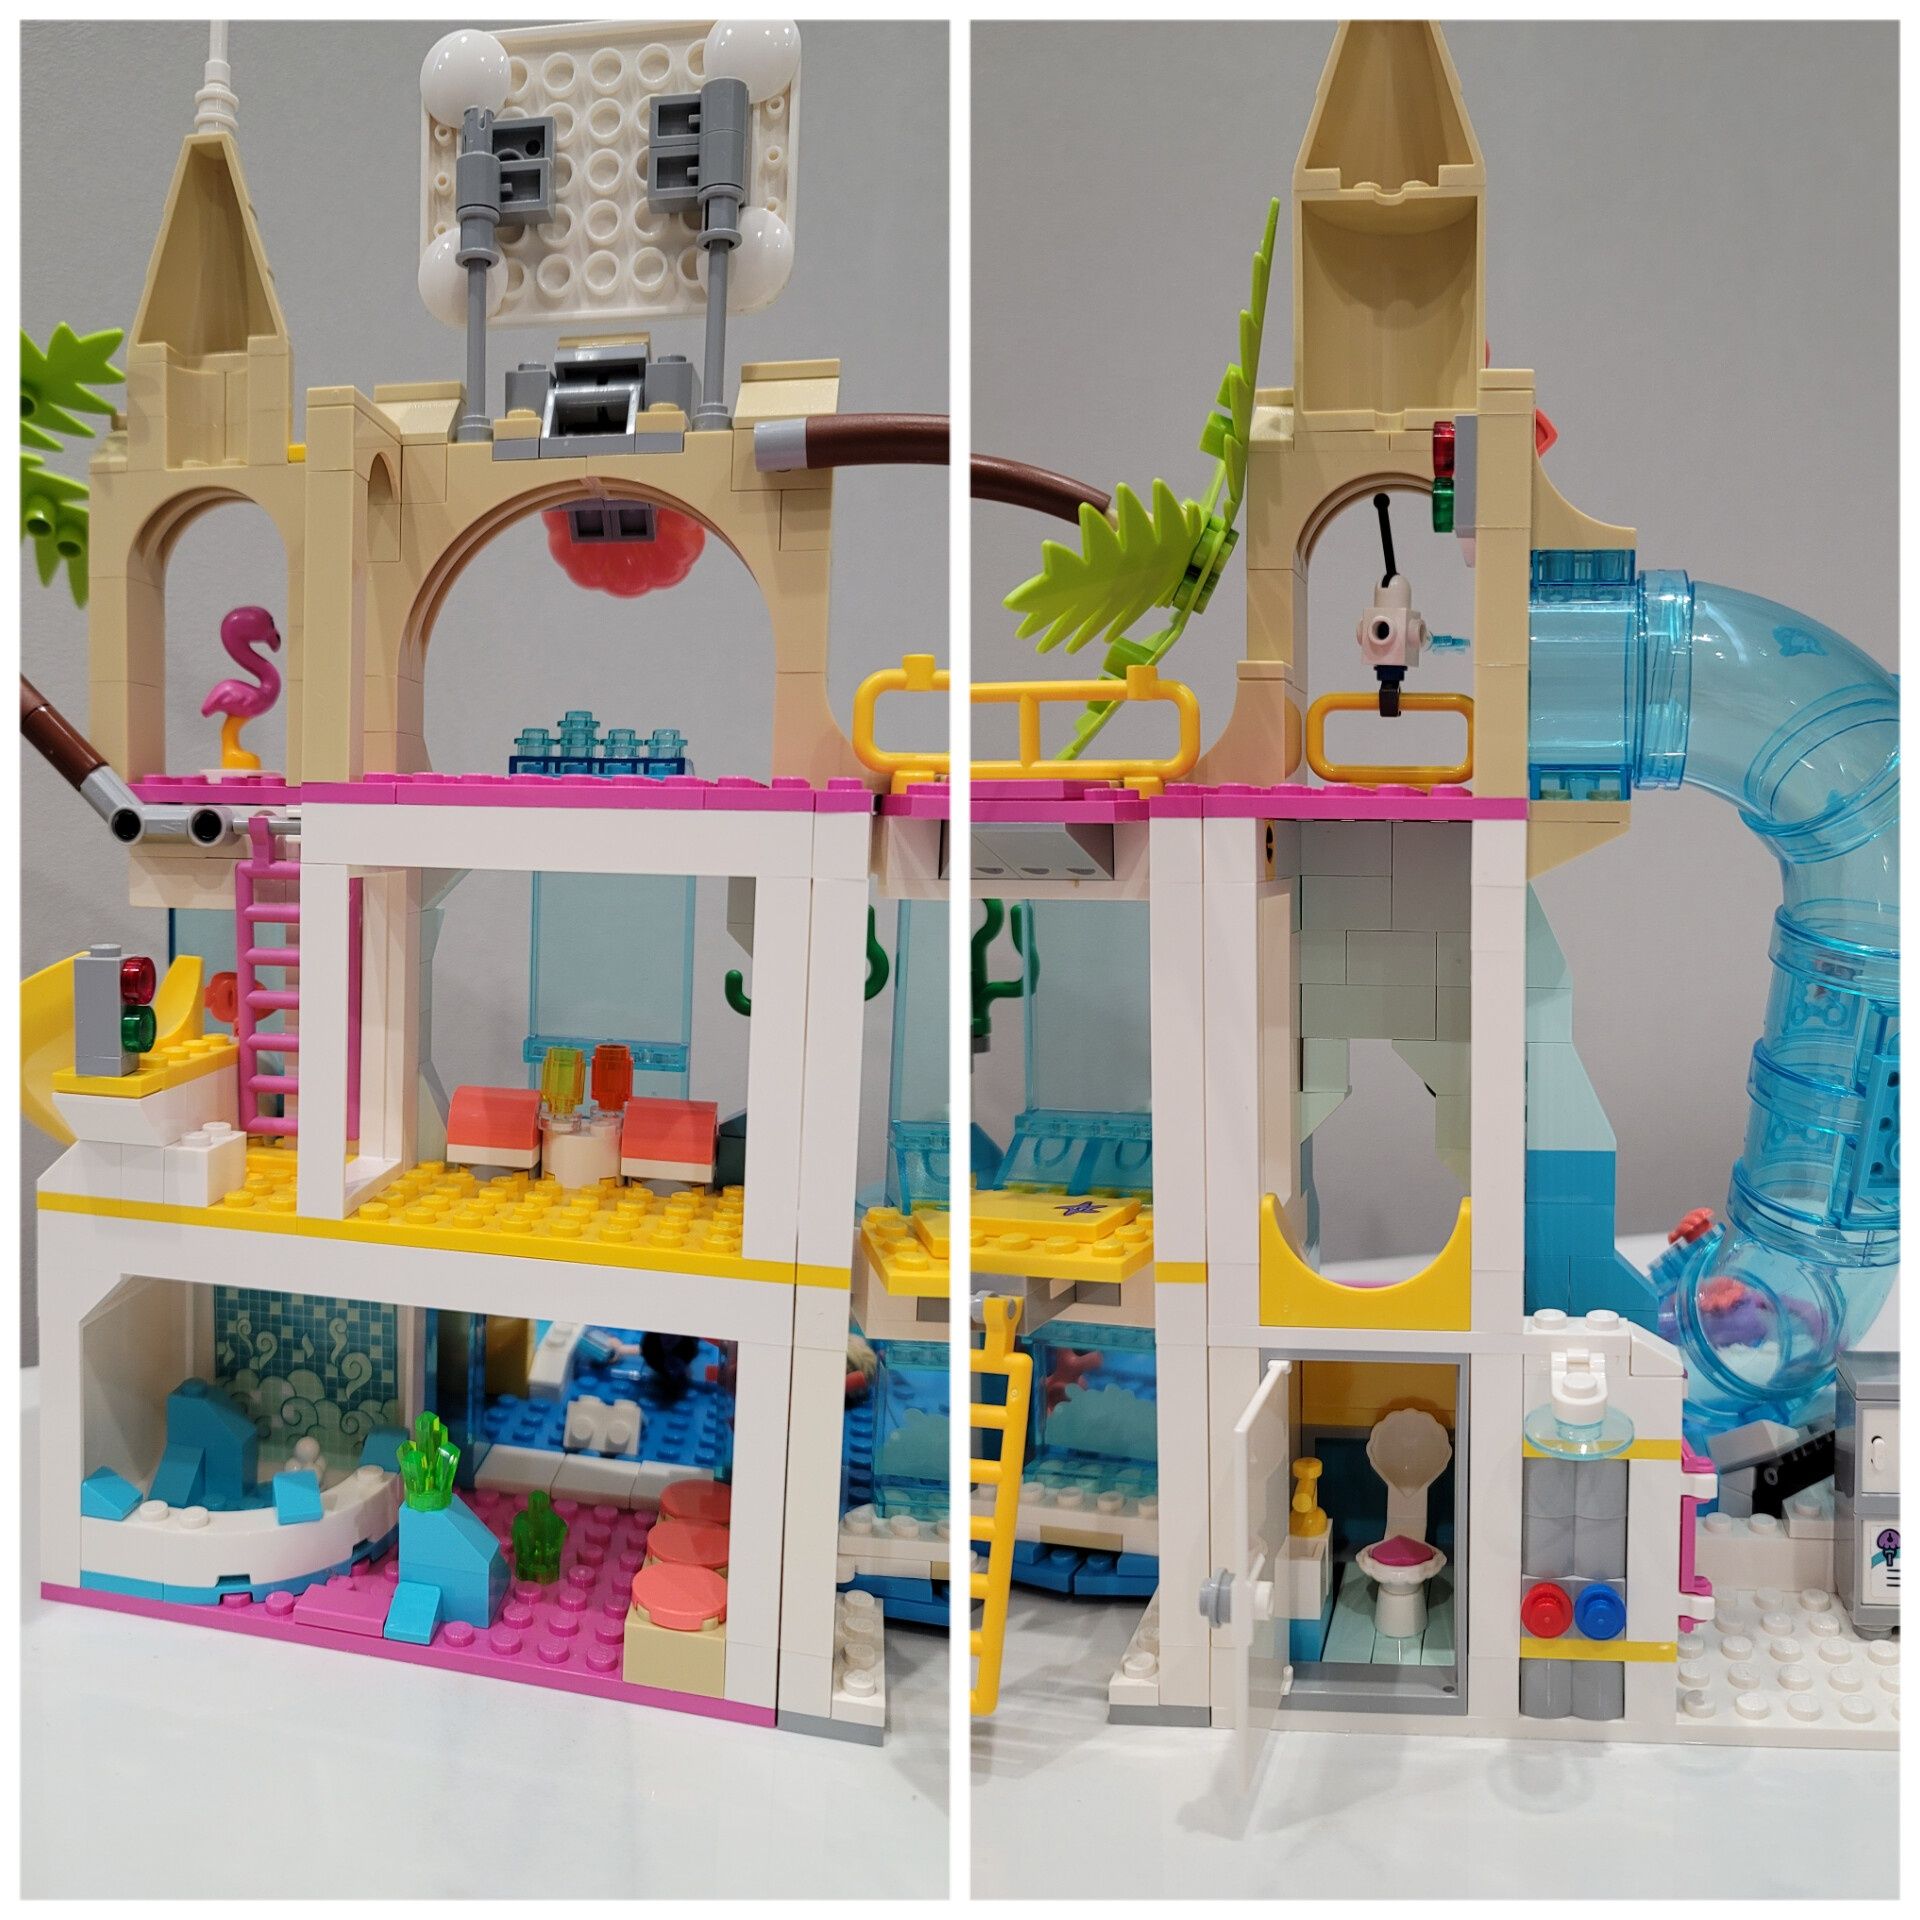 Lego Friends аквапарк 41430 Лего Френдс